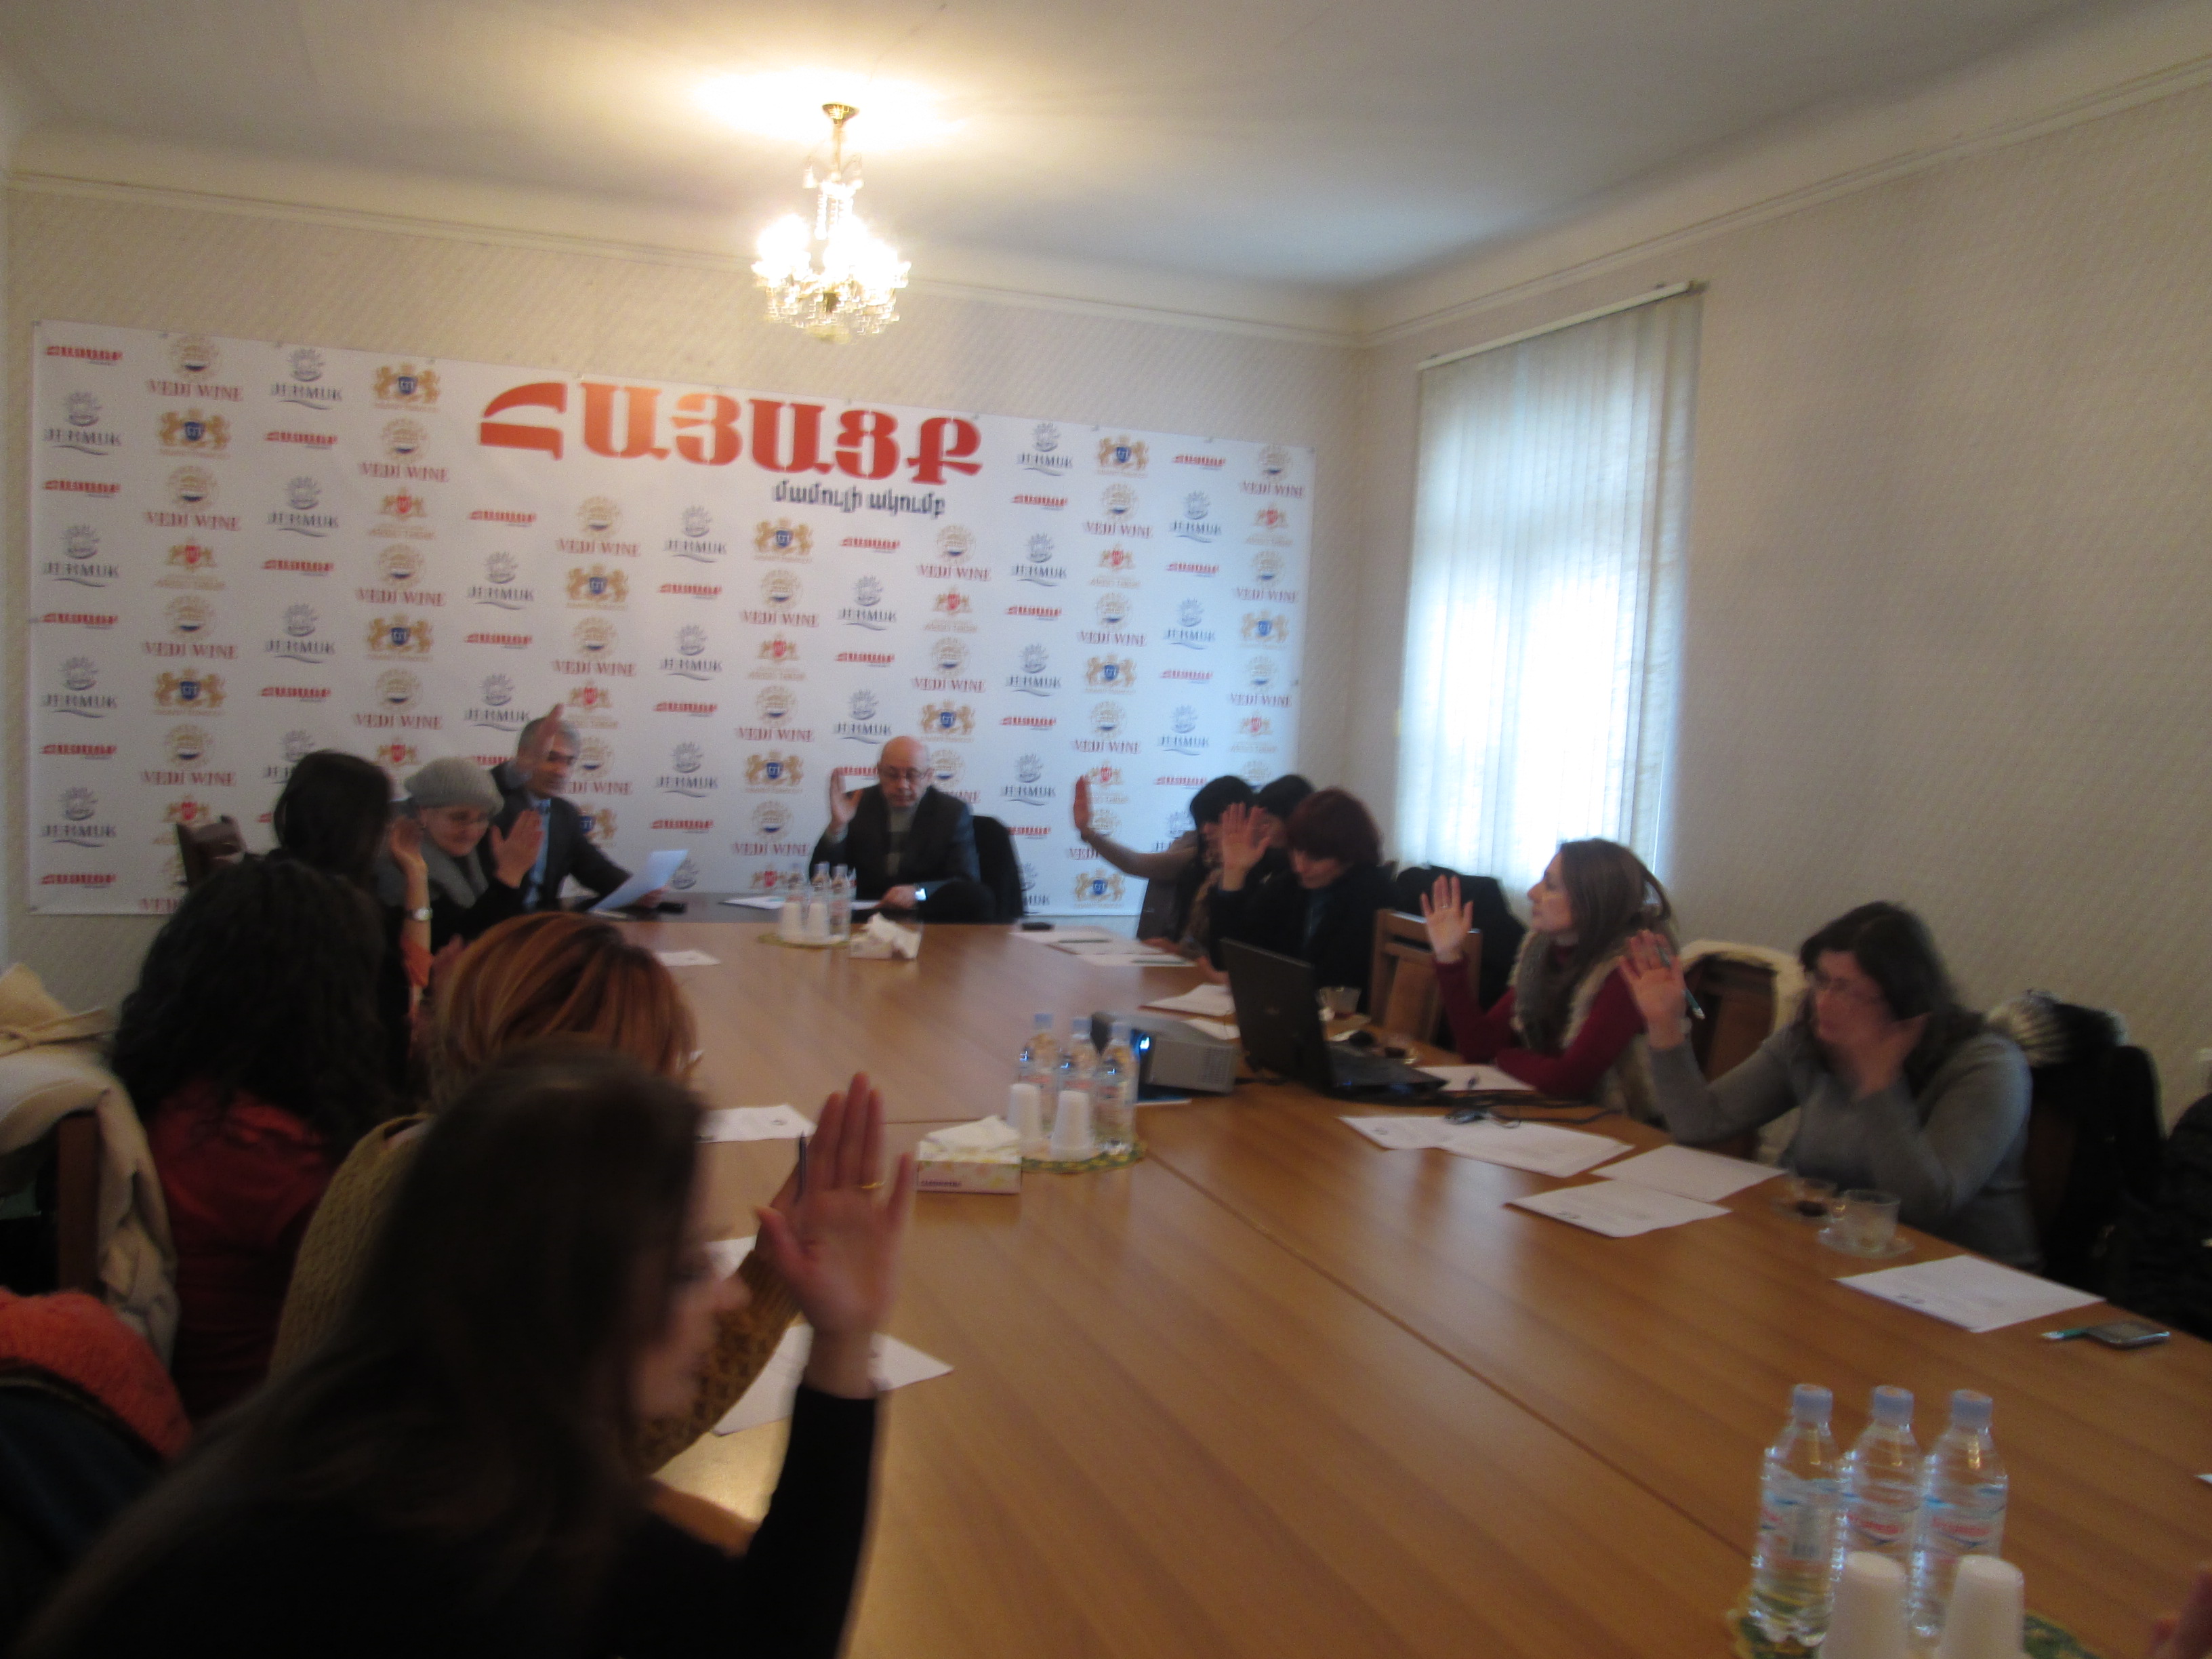 Հայաստանի Գործատուների Հանրապետական Միության Մասնավոր Զբաղվածության ընկերությունների ճյուղային միությ համագումար  